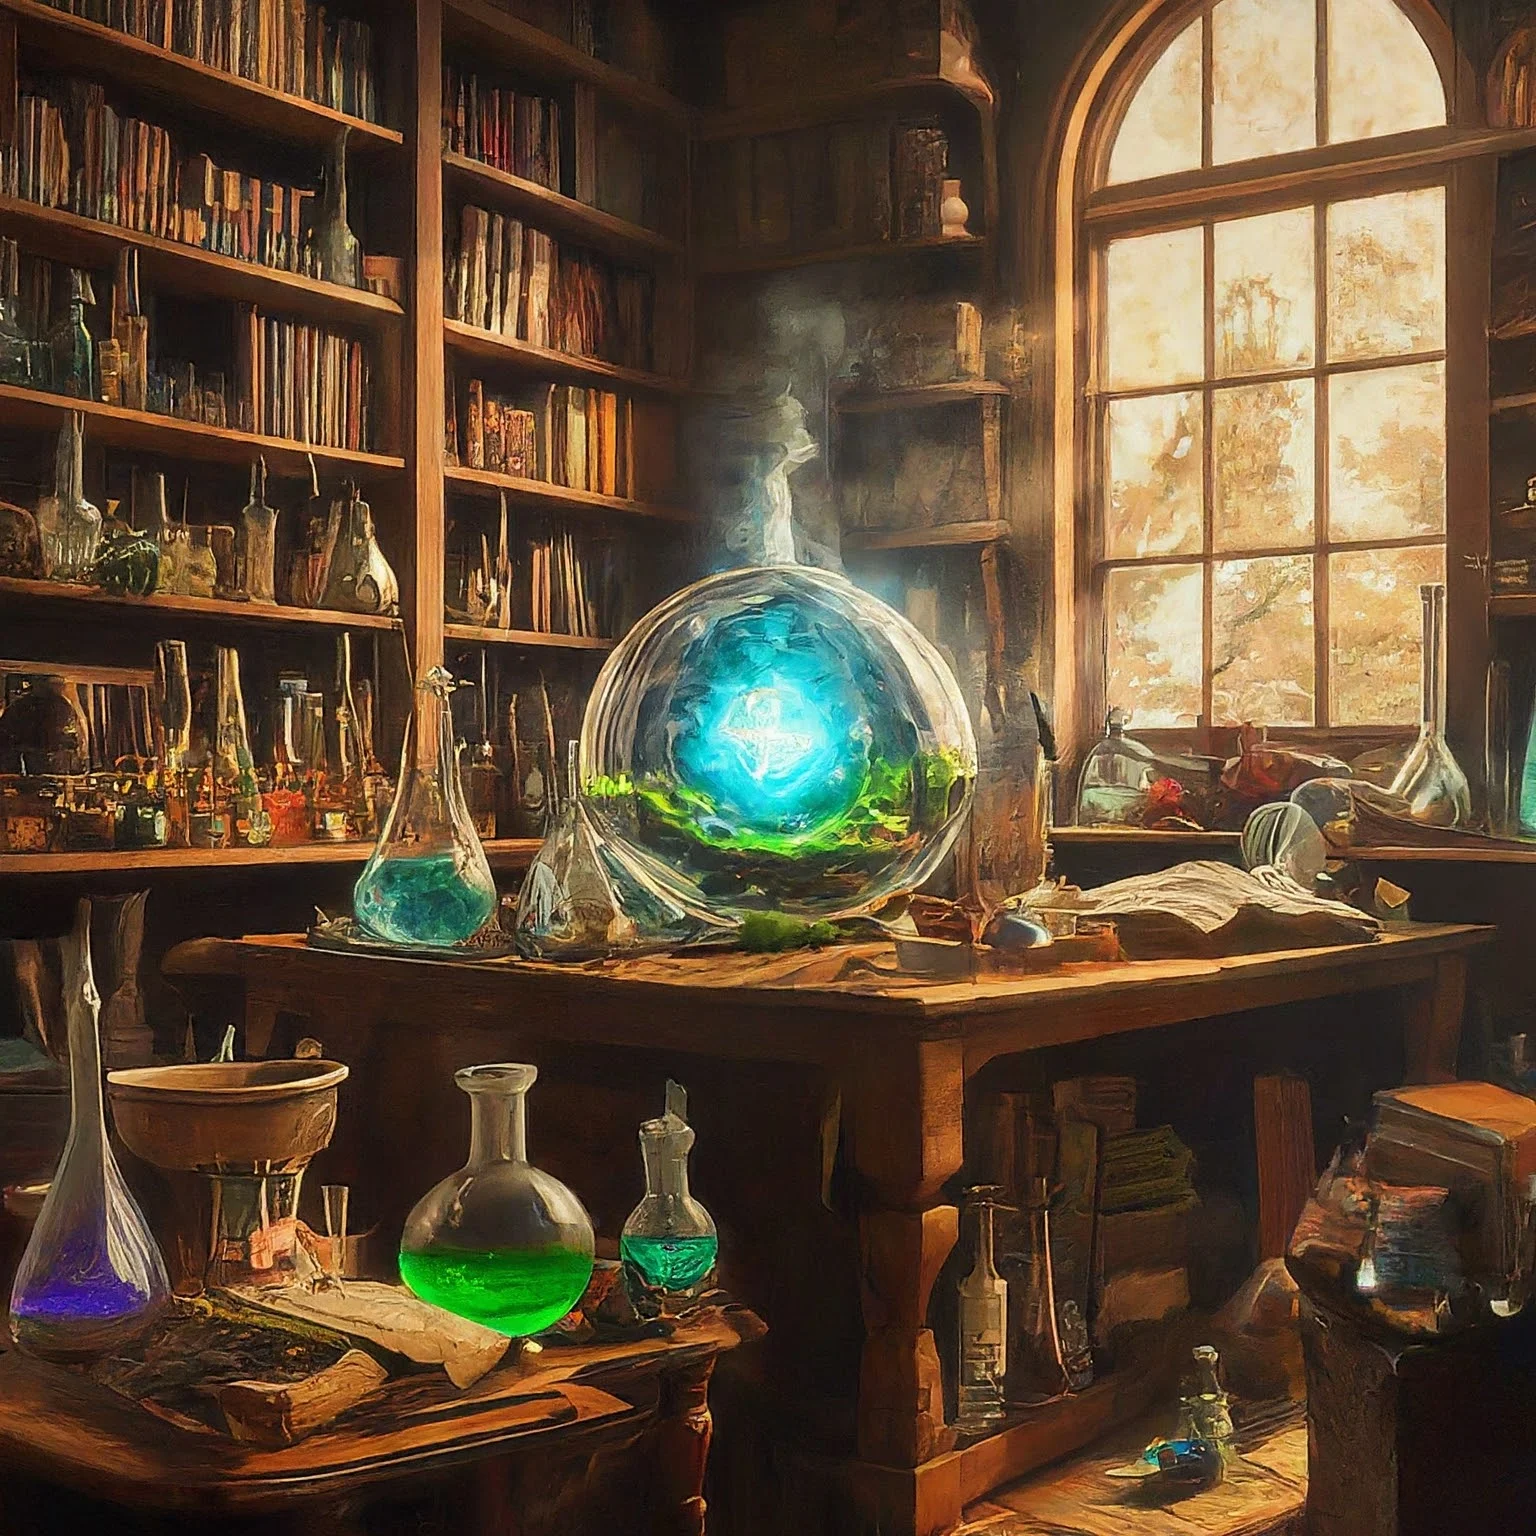 Um laboratório de química com frascos coloridos ao redor da mesa, uma estante de livros ao fundo e a luz entrando por uma janela.